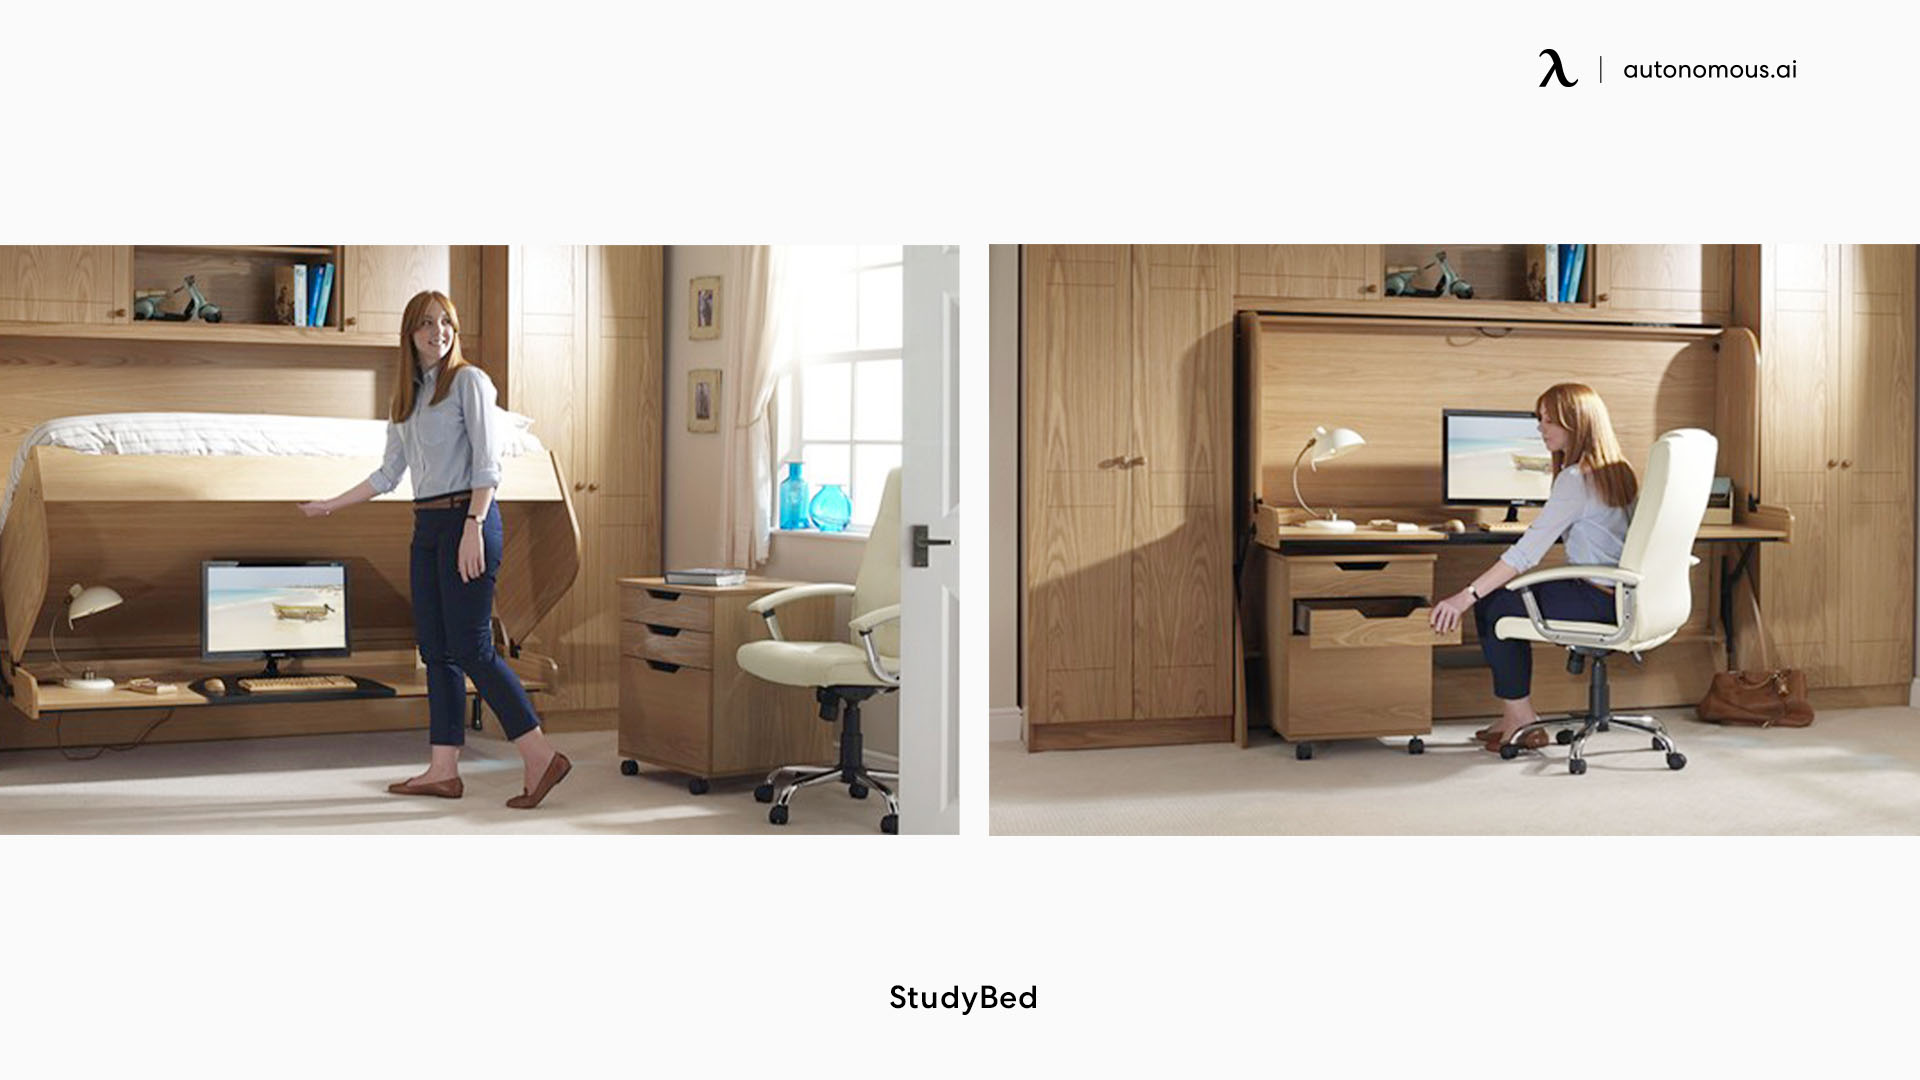 StudyBed home office desk design